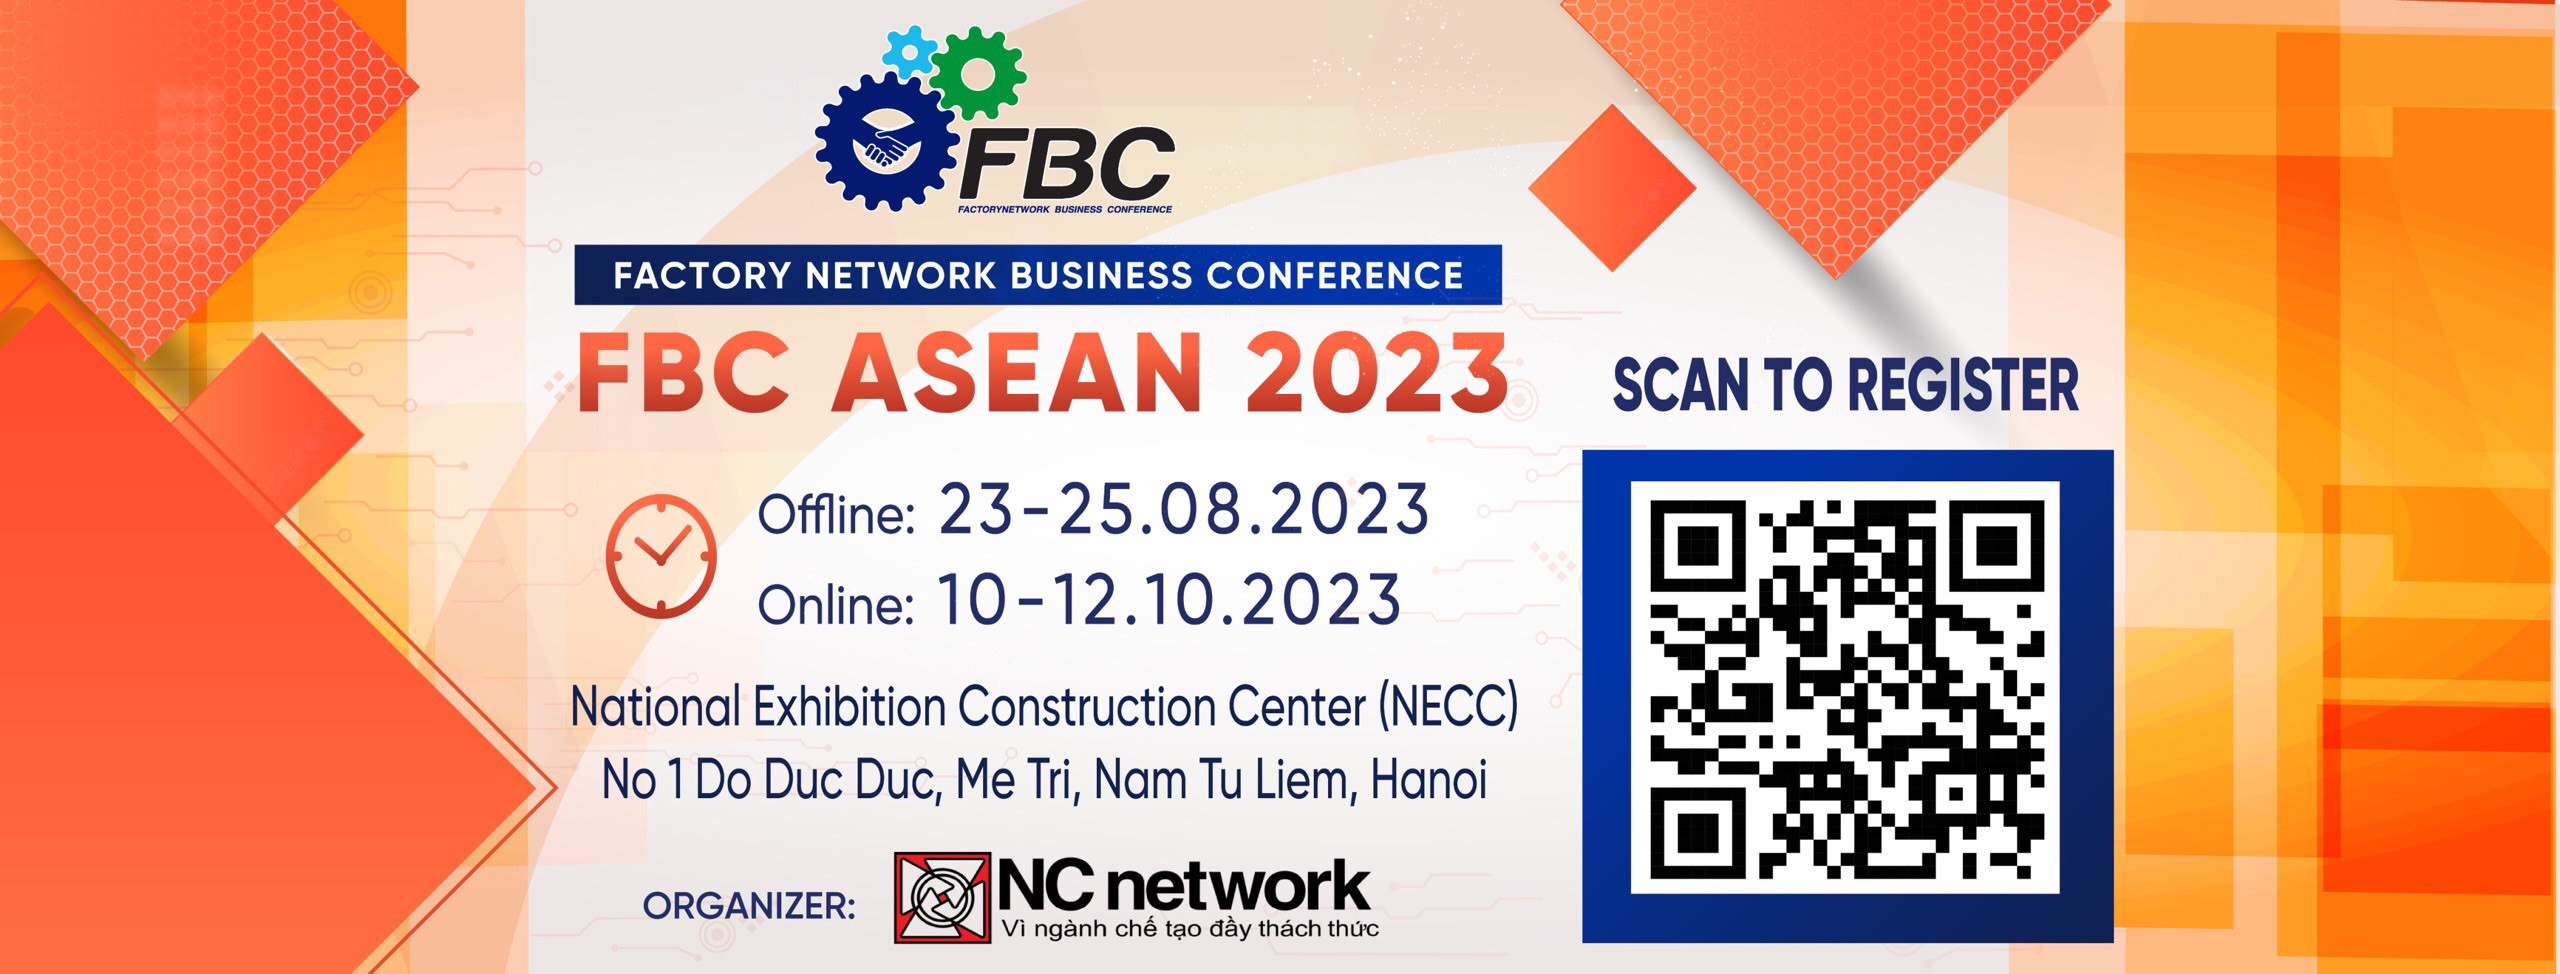 Hội chợ Giao thương Quốc tế Ngành chế tạo FBC ASEAN 2023 - Giới thiệu doanh nghiệp triển lãm (11)